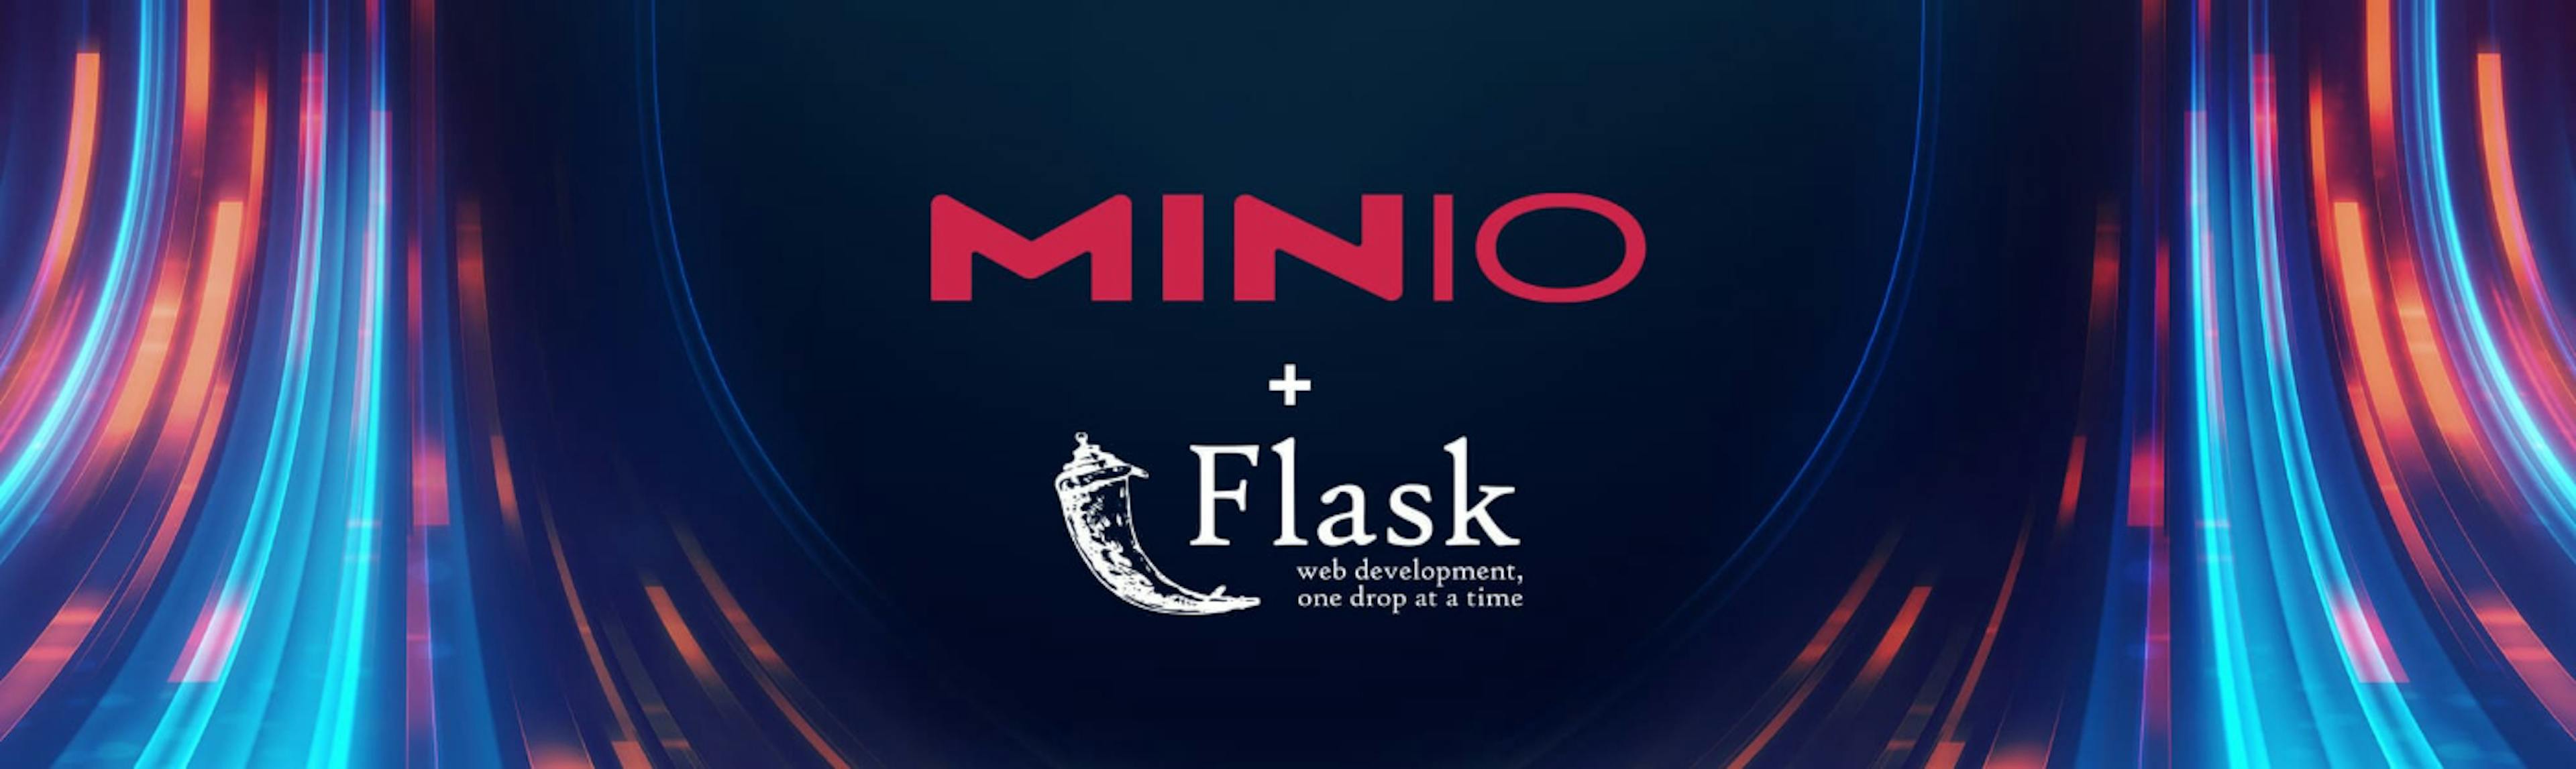 featured image - Usando MinIO e Python para criar aplicativos orientados a eventos escalonáveis e eficientes